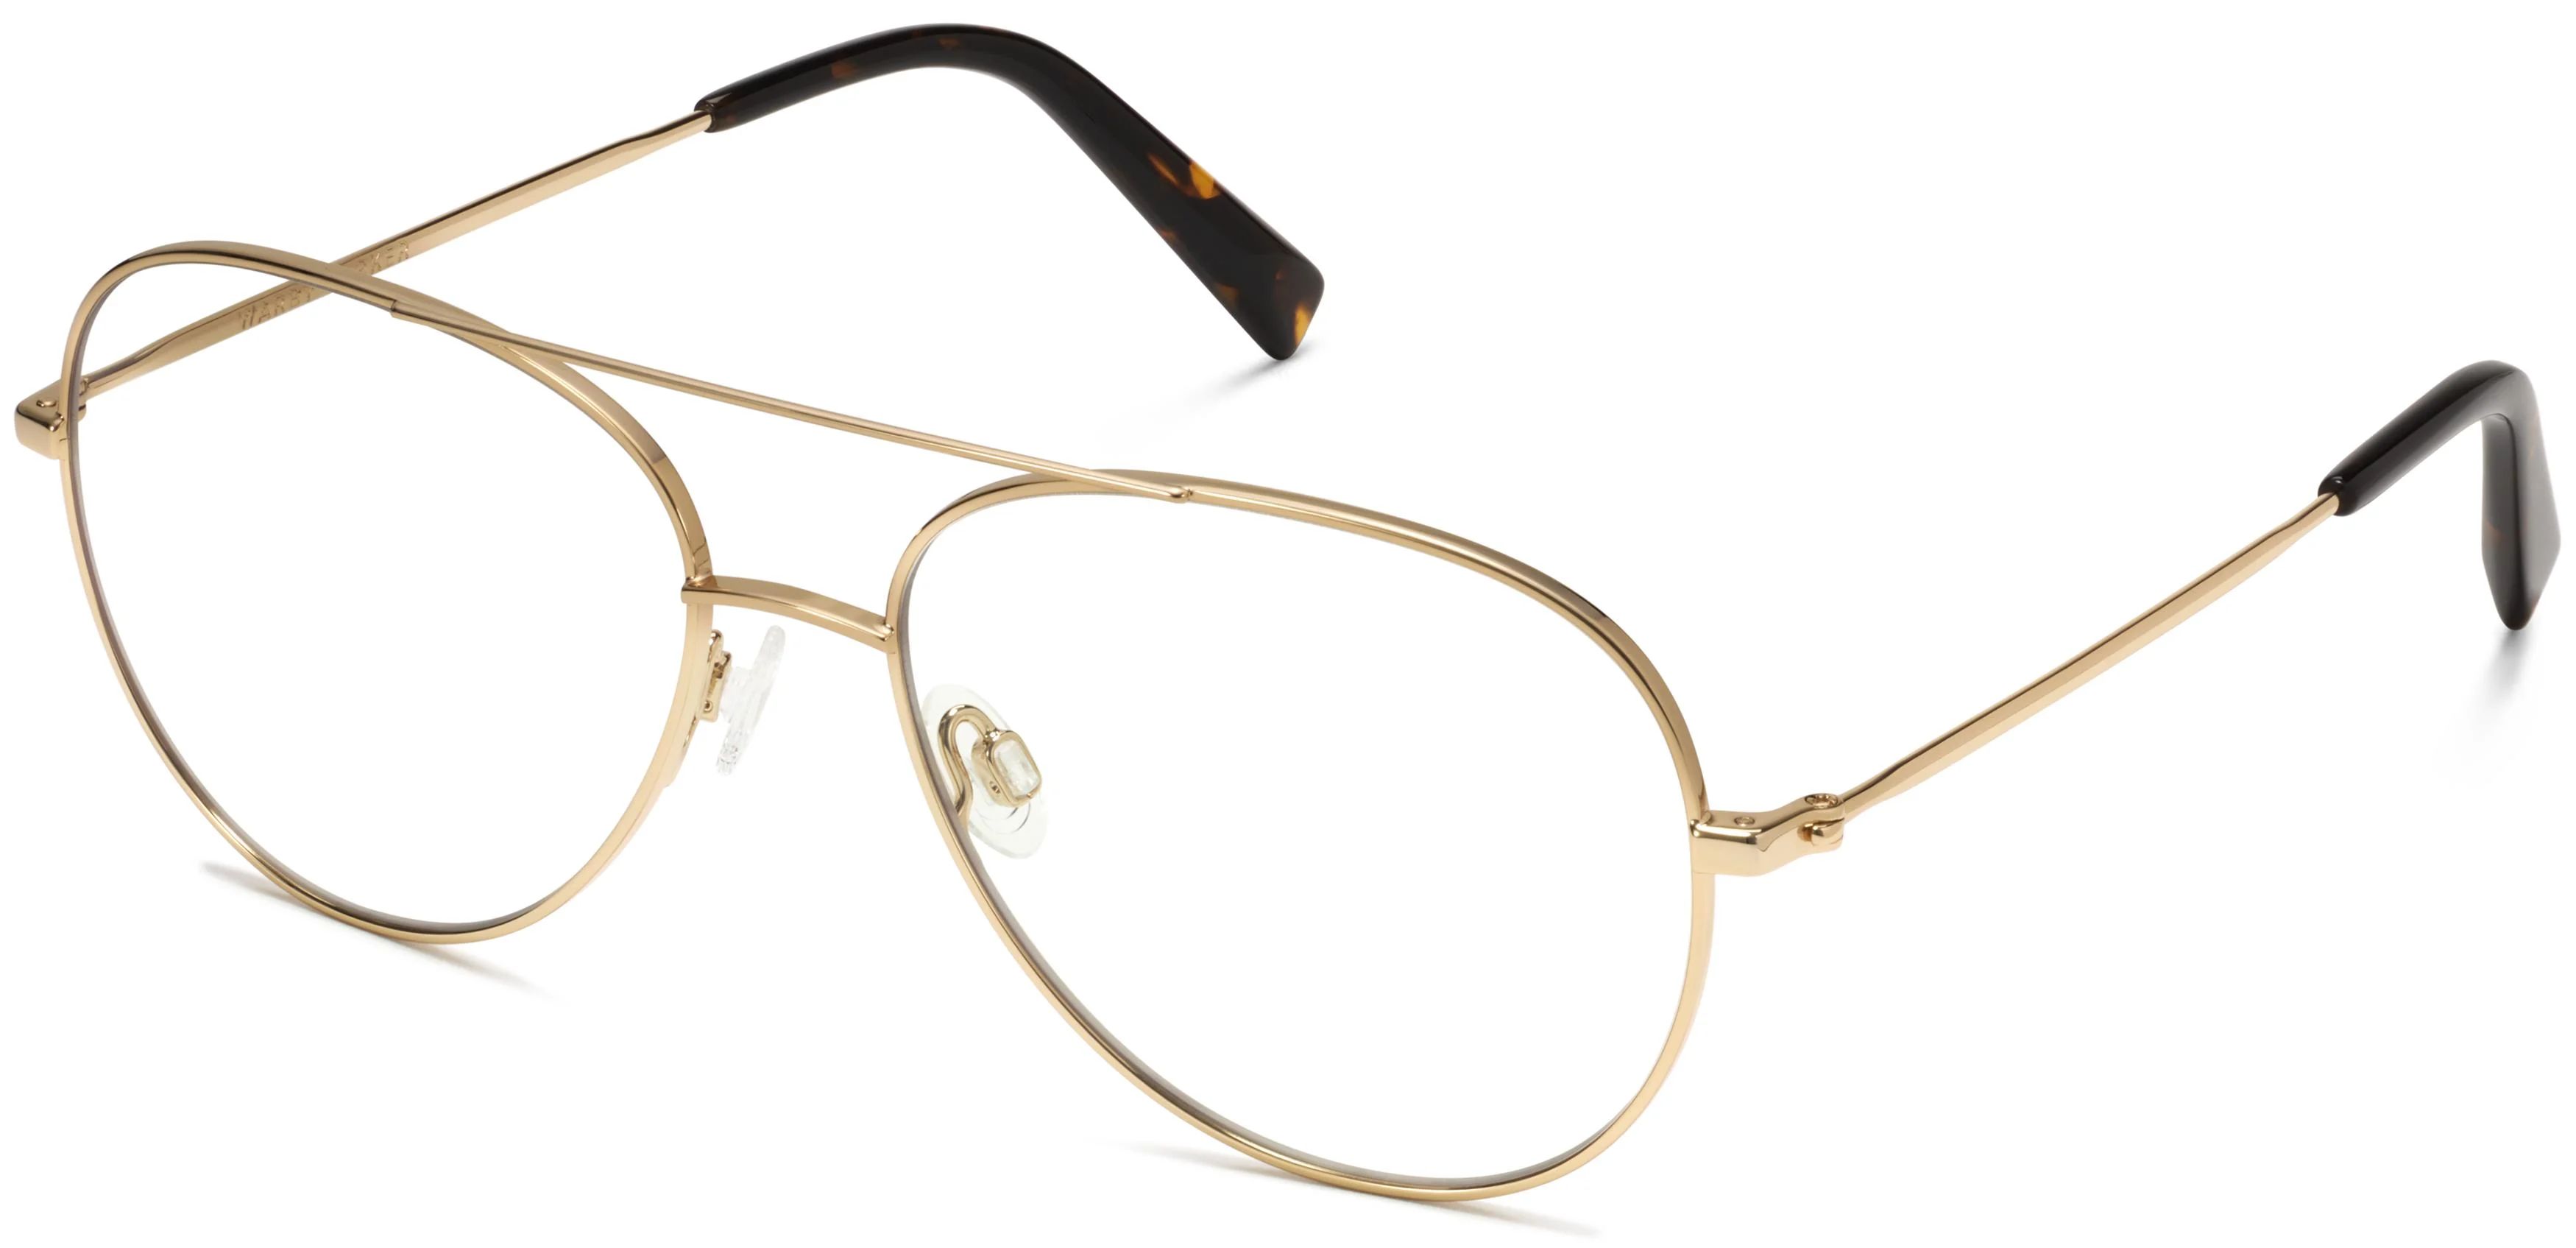 York Eyeglasses in Polished Gold | Warby Parker | Warby Parker (US)